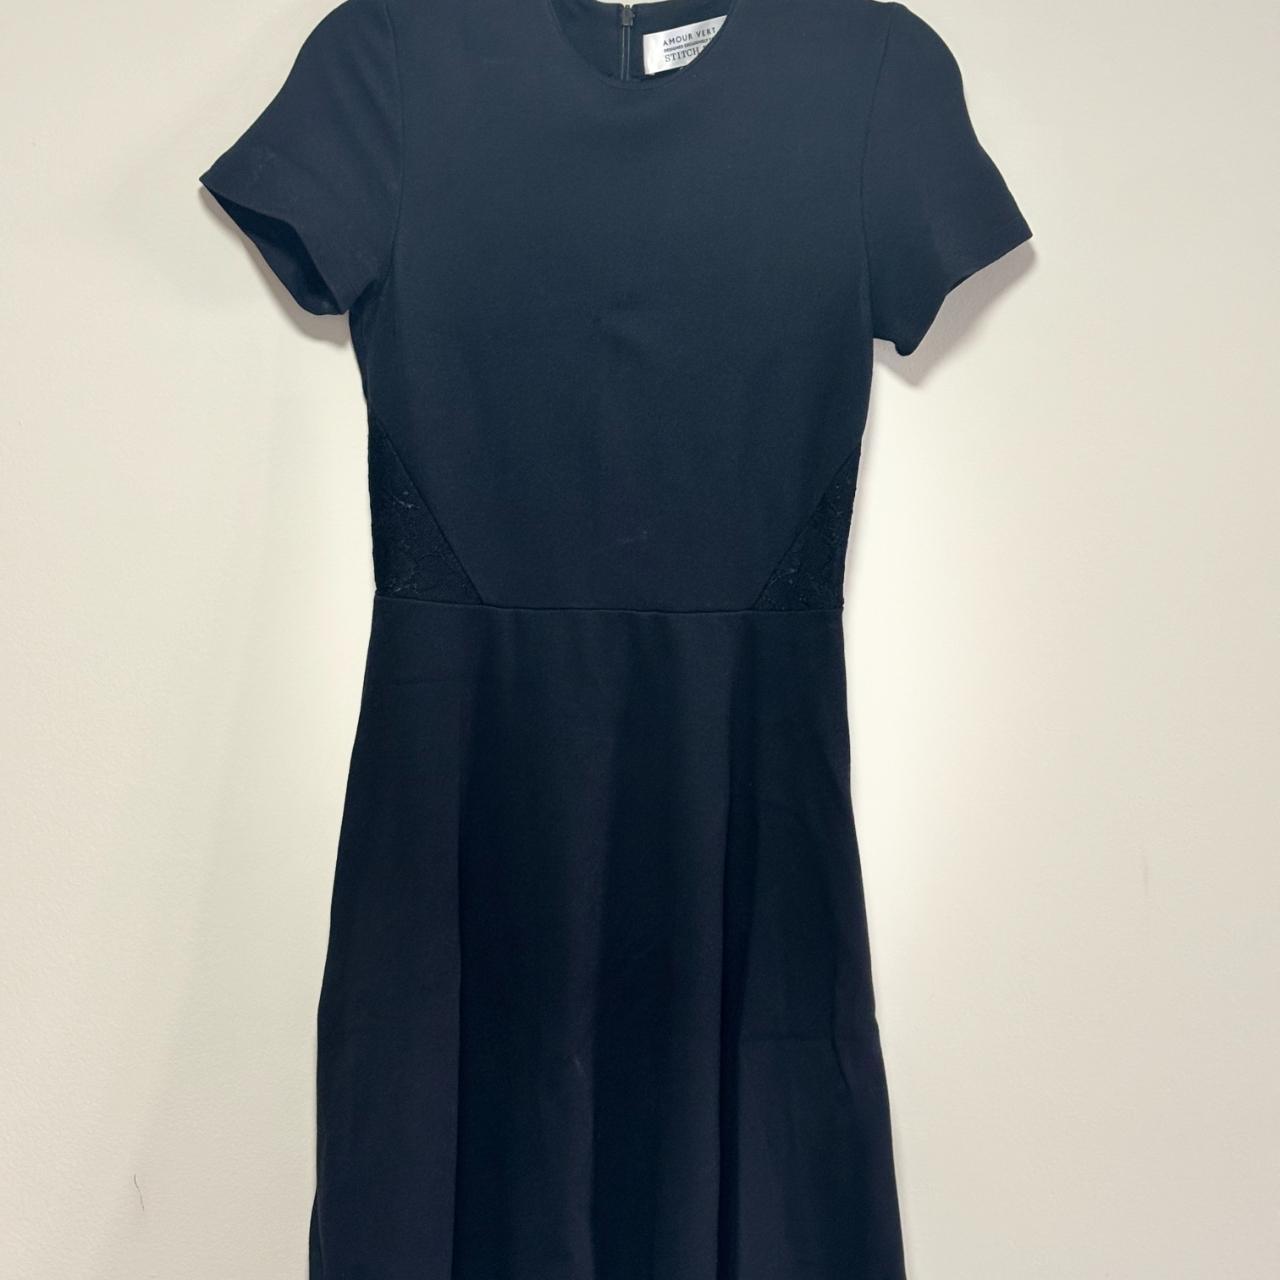 Amour Vert Women's Black Dress